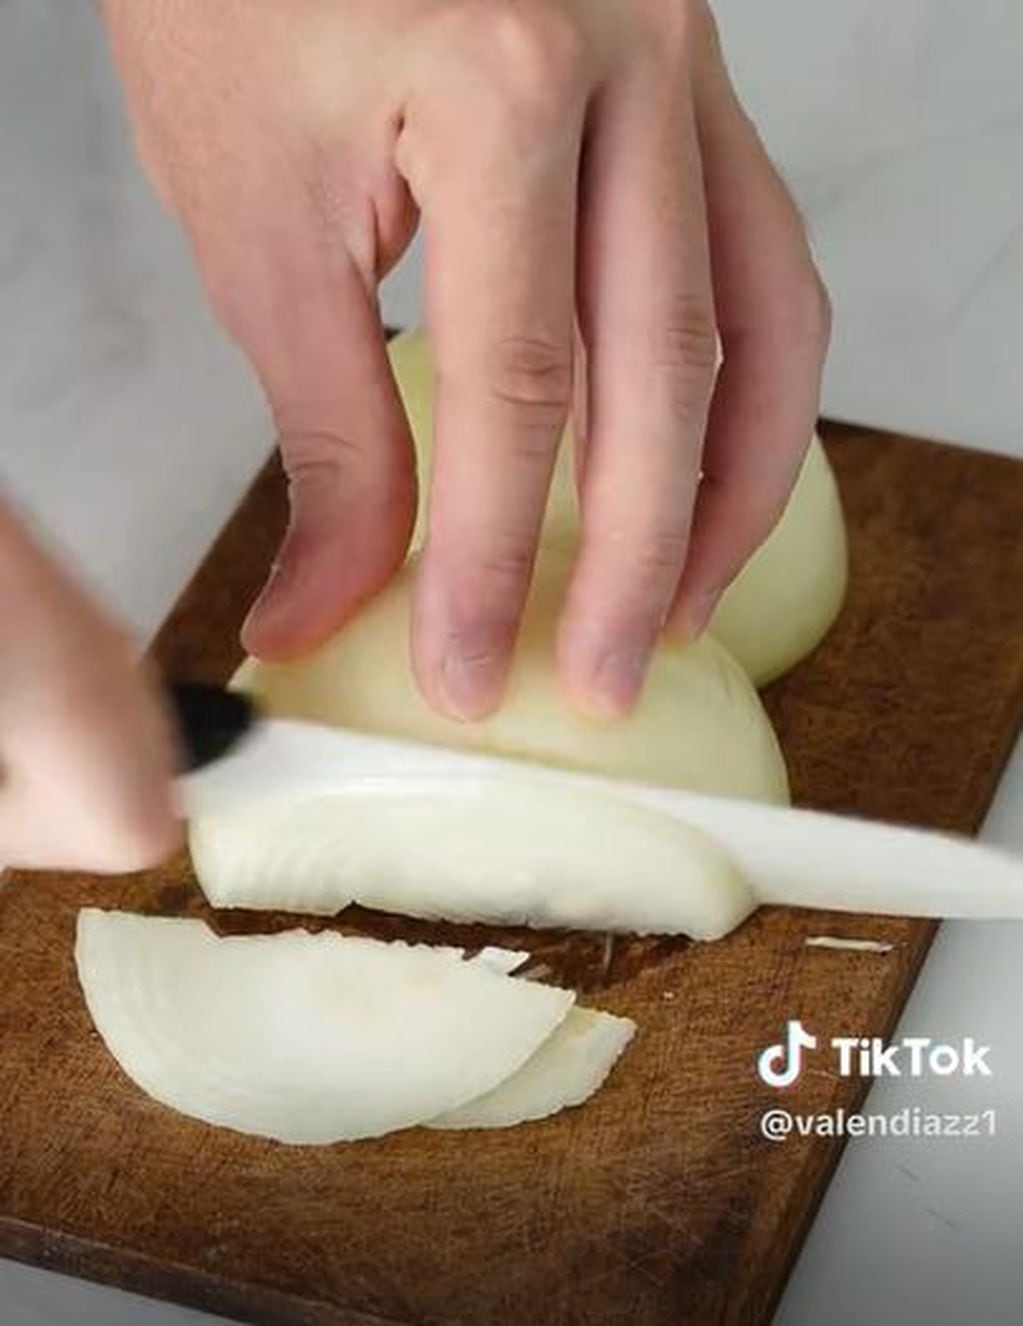 Receta fácil y rápida: cómo preparar pasta con cebolla caramelizada en simples pasos y con pocos ingredientes